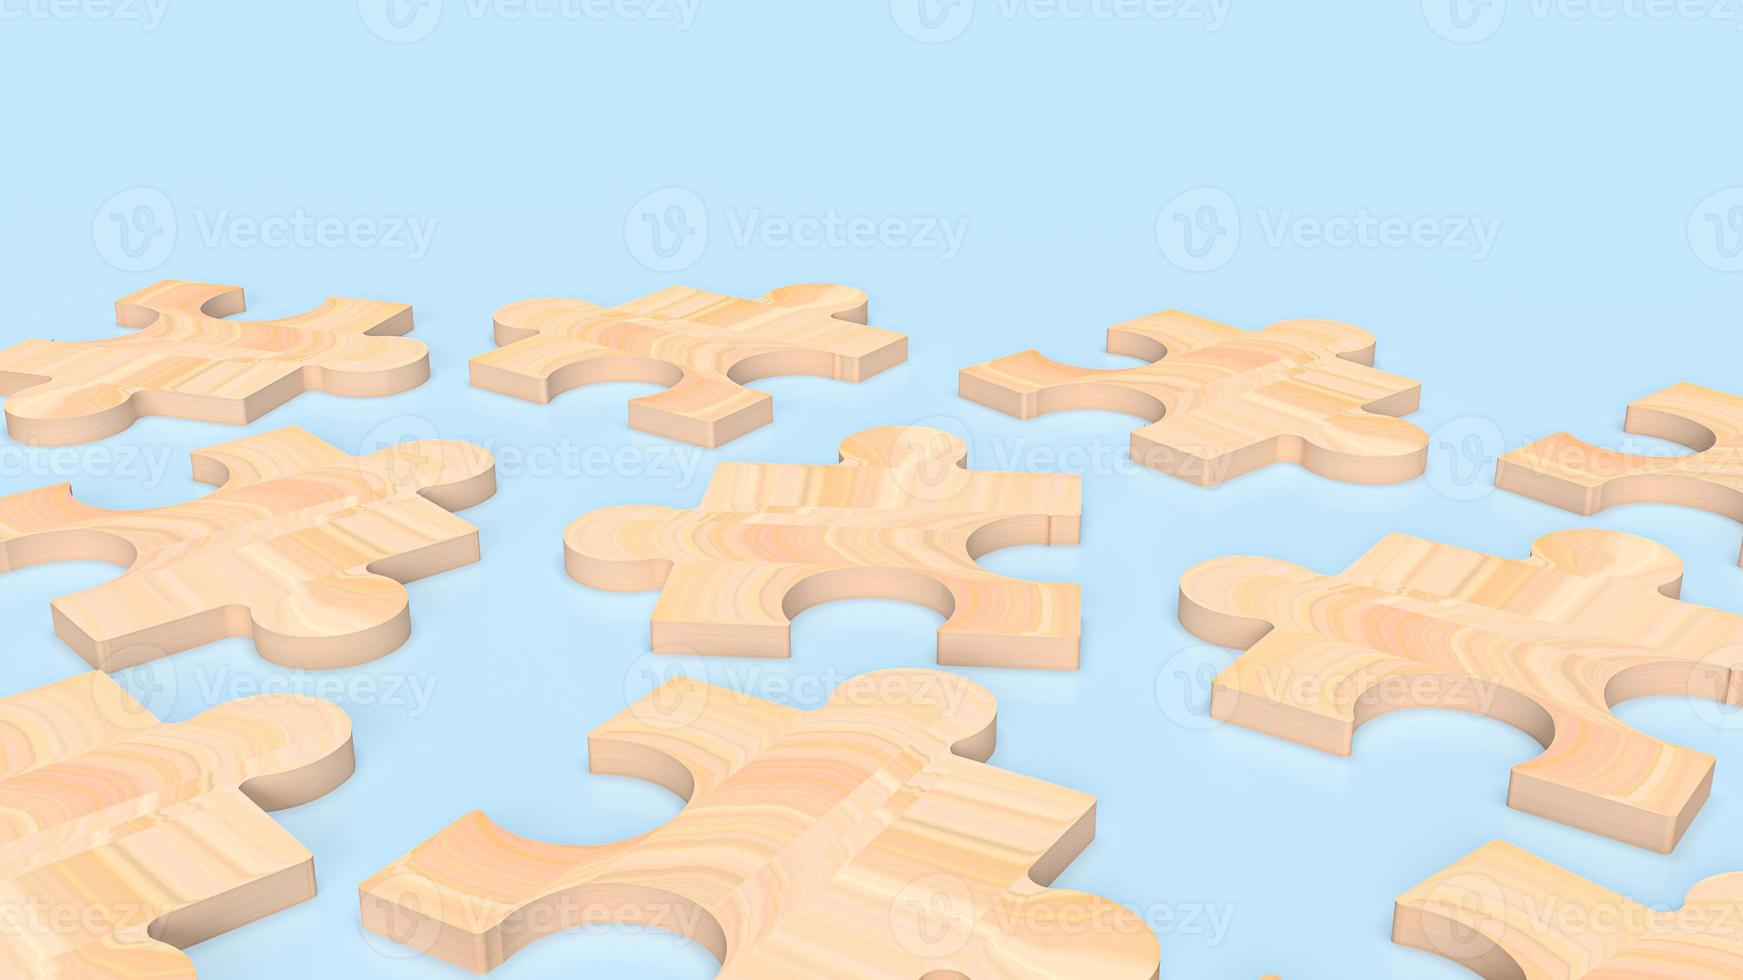 Holzpuzzle für Business-Hintergrund 3D-Rendering foto